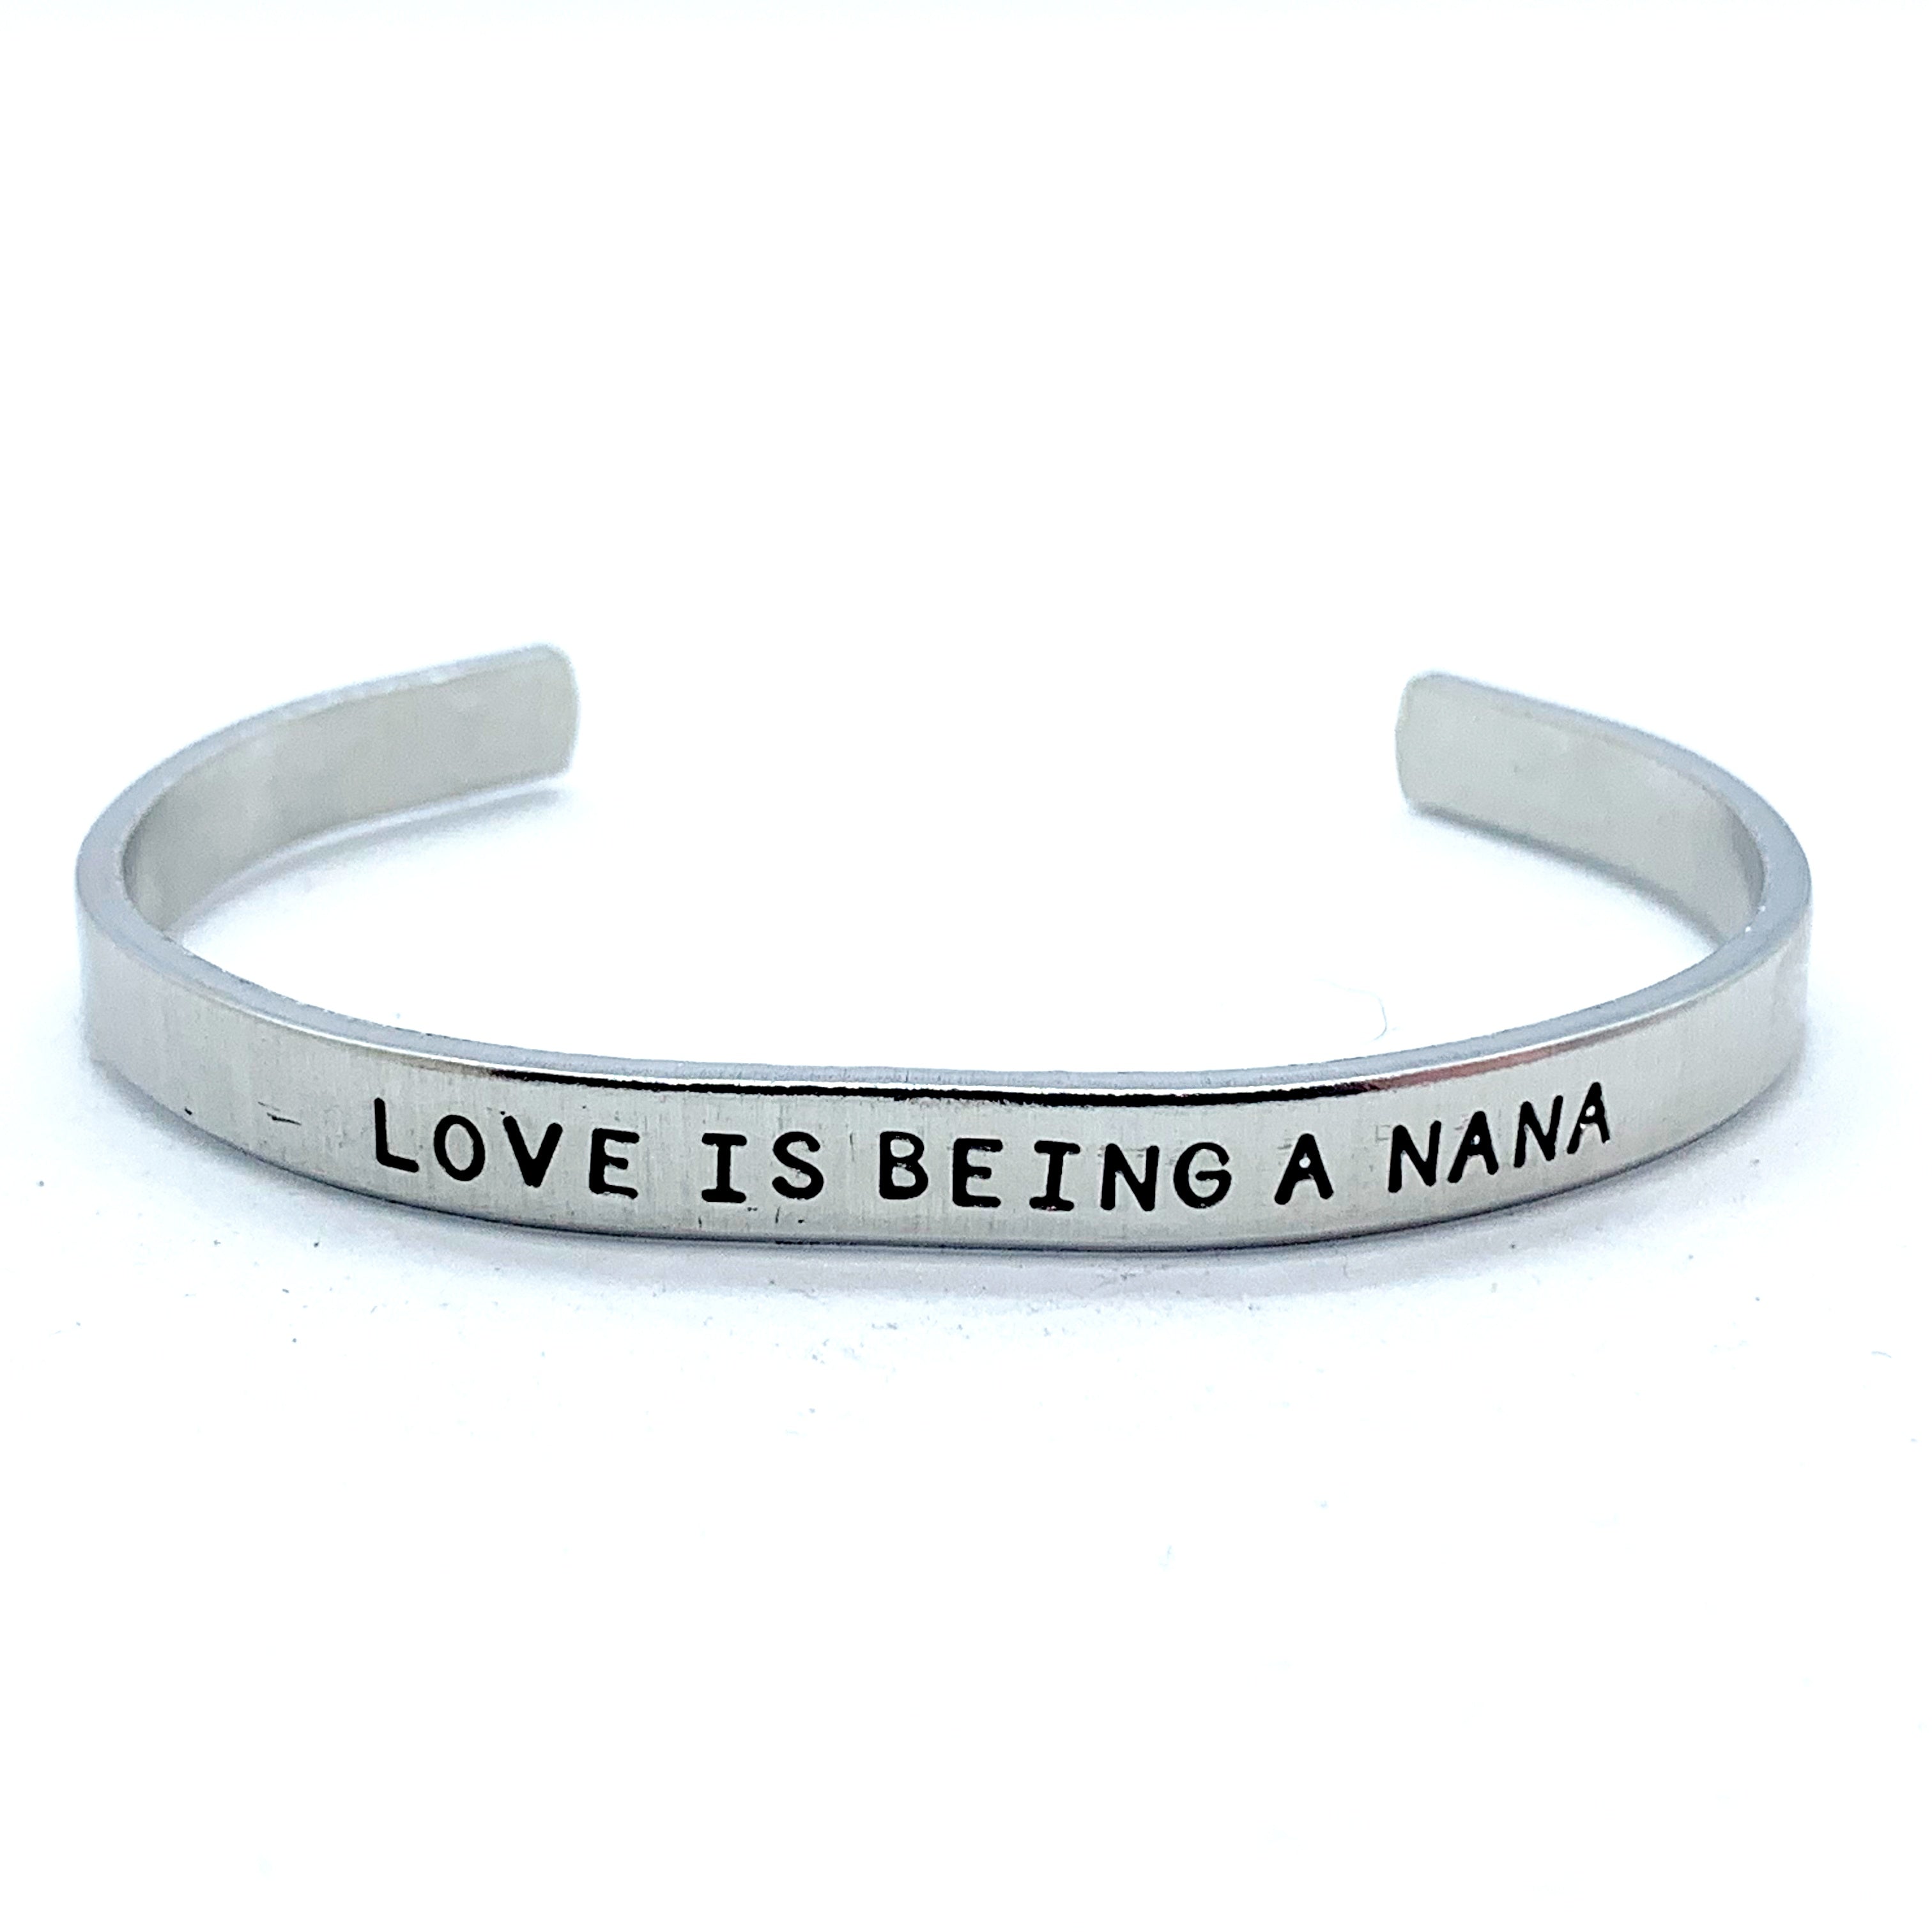 ¼ inch Aluminum Cuff - Love Is Being A Nana